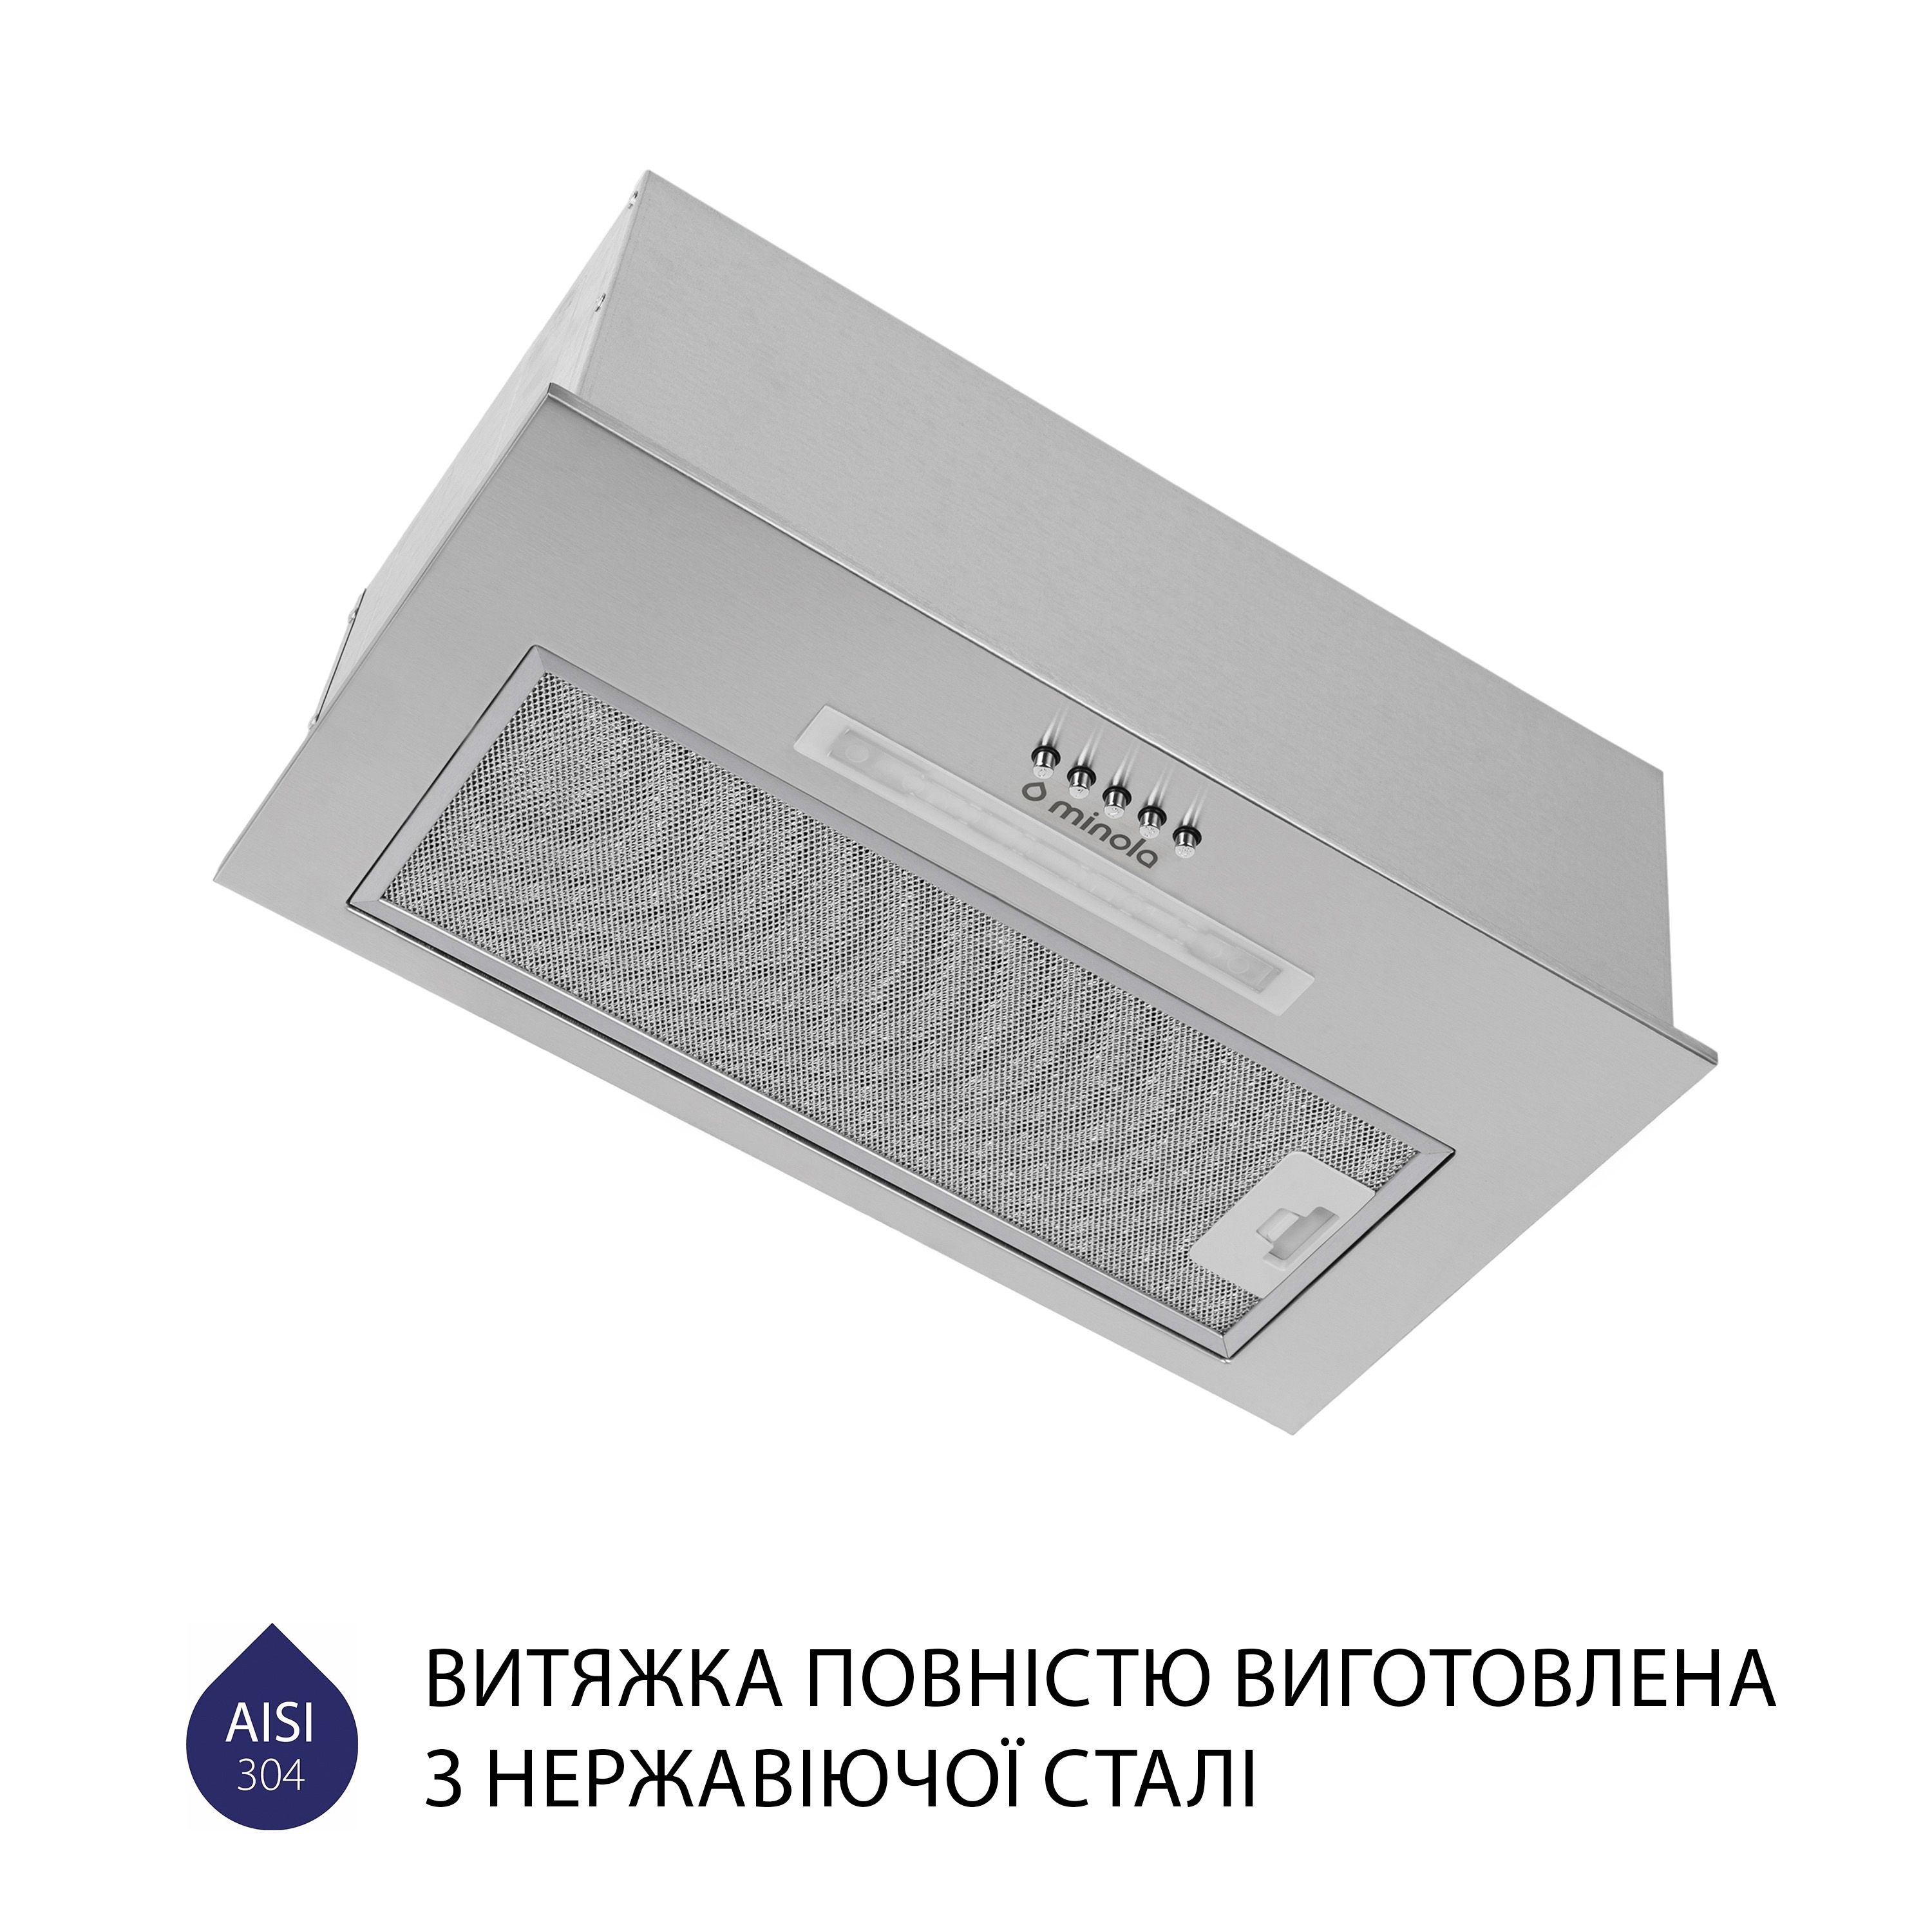 продаём Minola HBI 5323 I 800 LED в Украине - фото 4